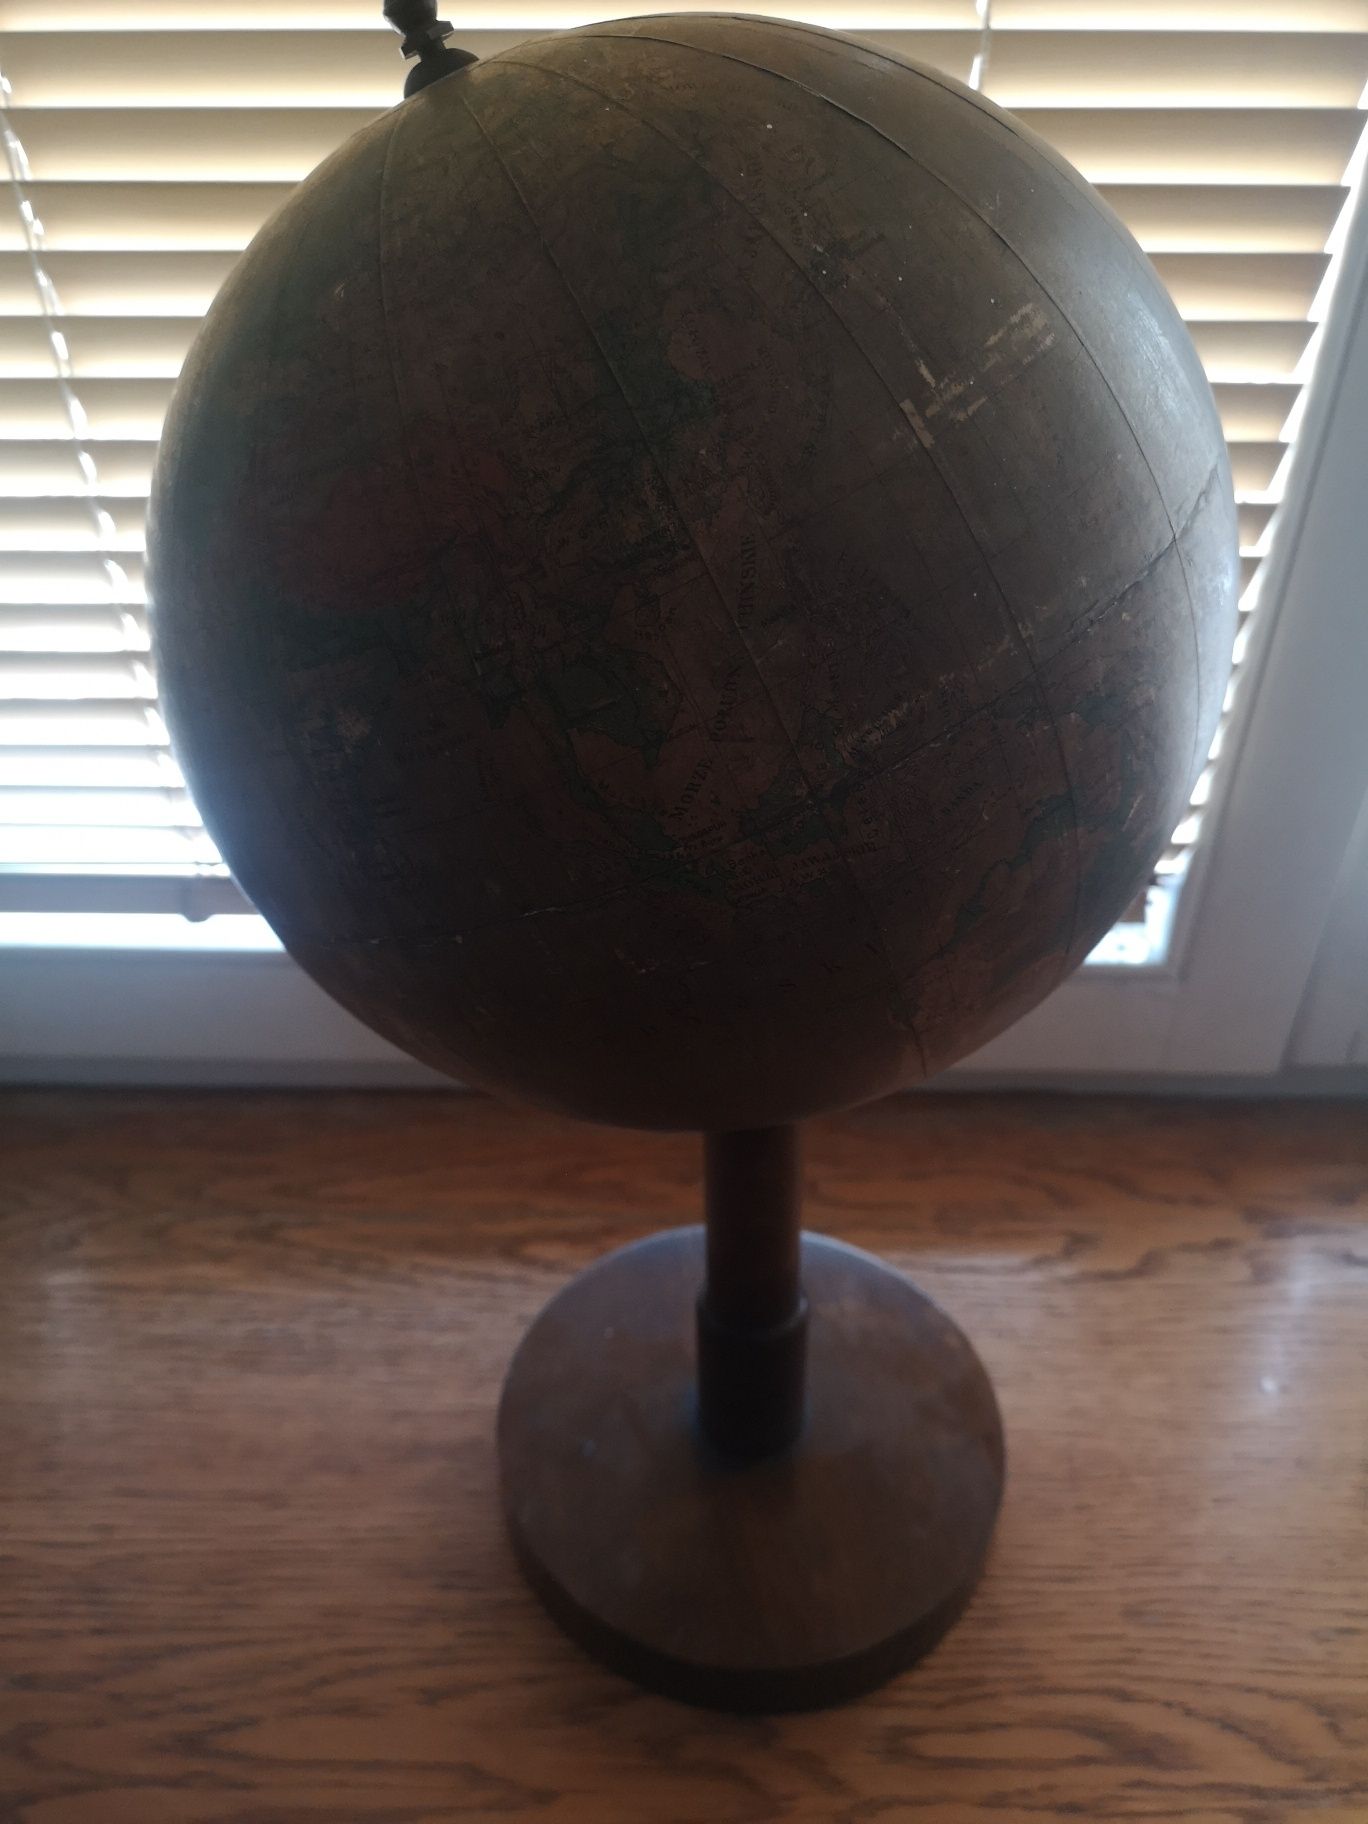 Stary globus świata do renowacji